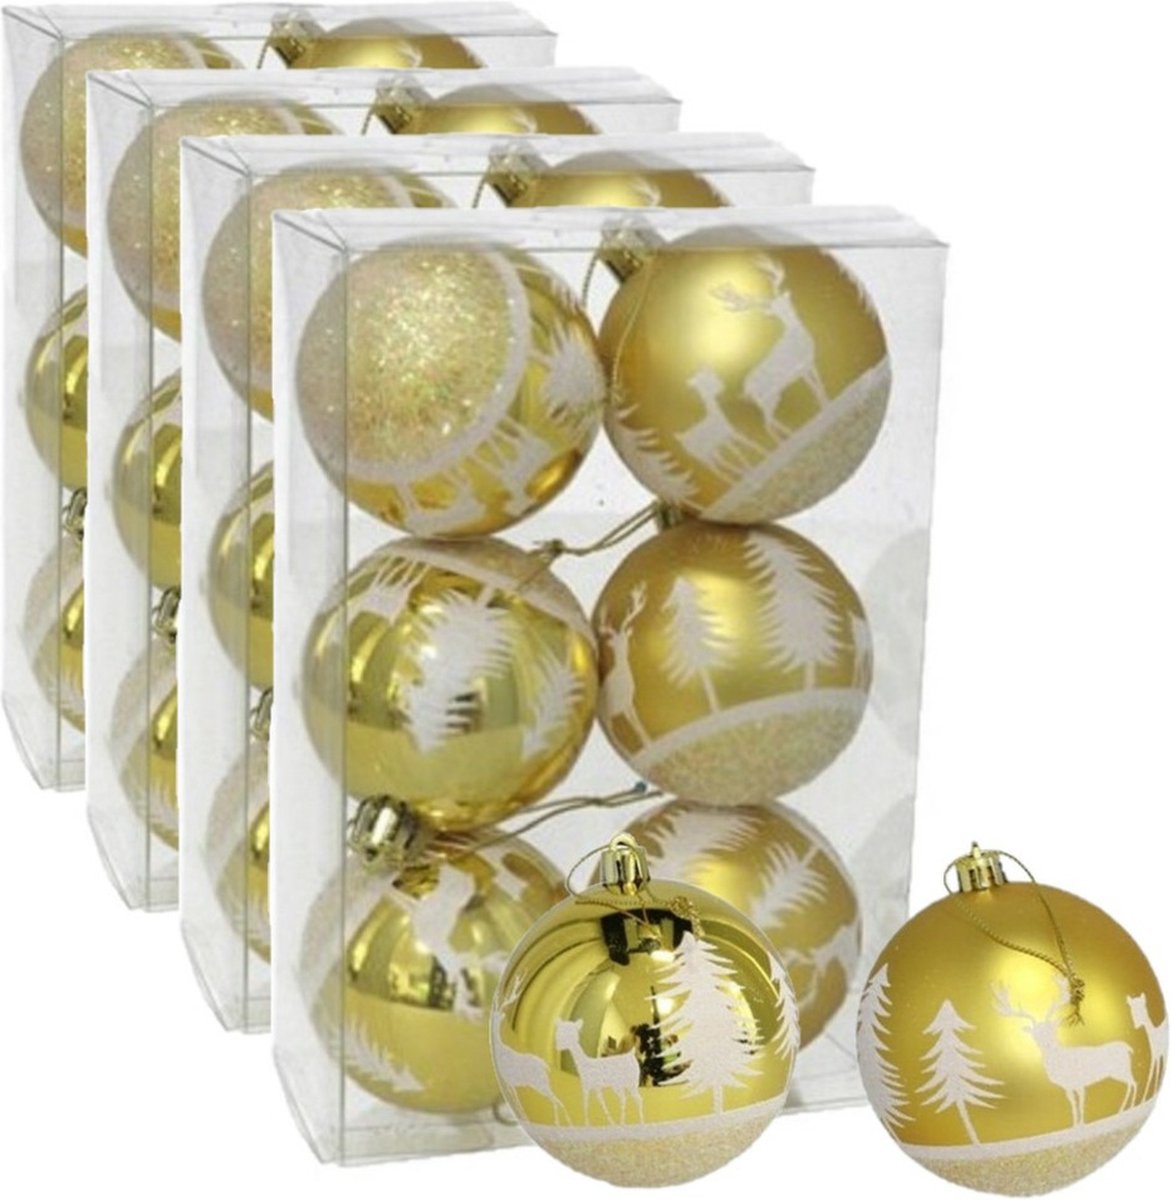 24x stuks gedecoreerde kerstballen goud kunststof diameter 6 cm - Kerstboom versiering